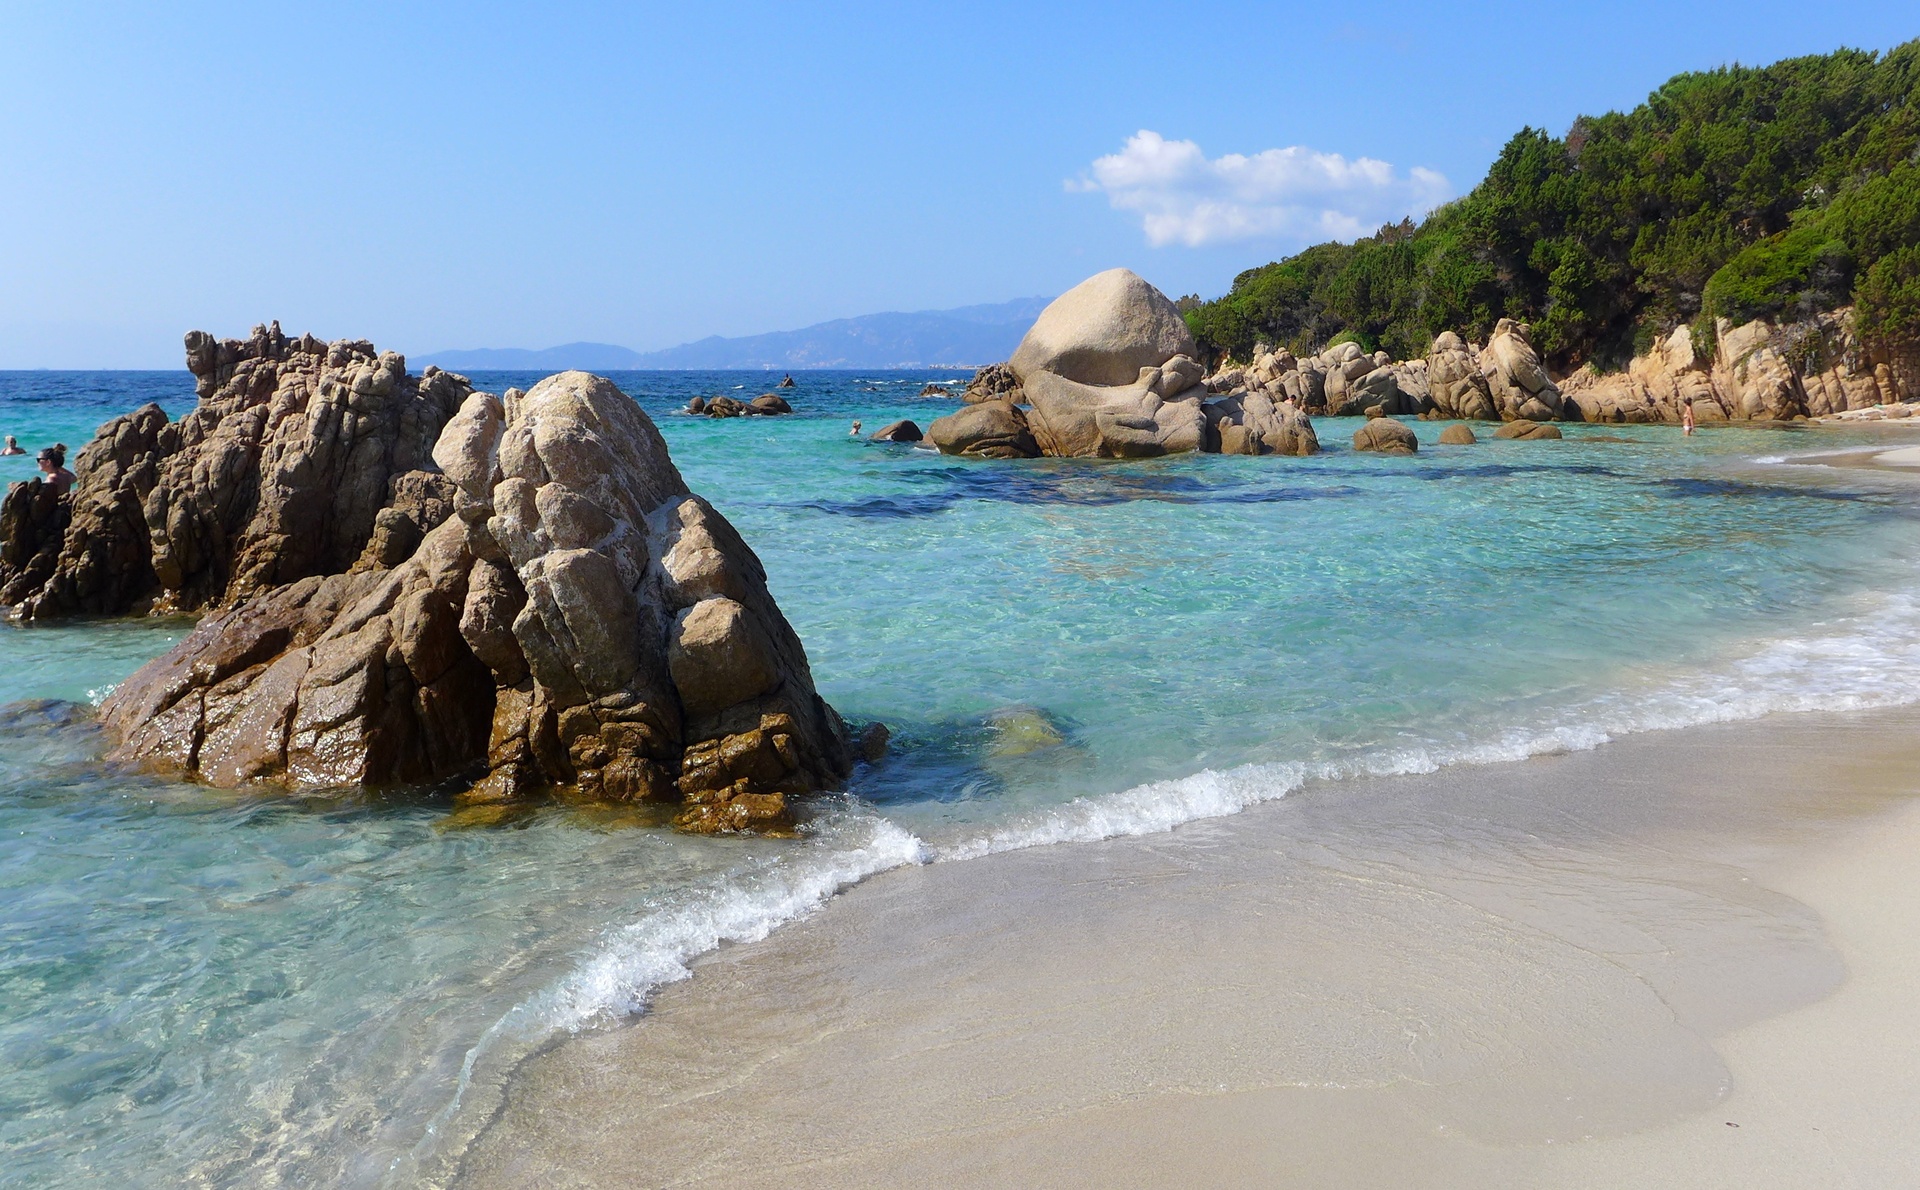 Vente camping bord de plage en Corse